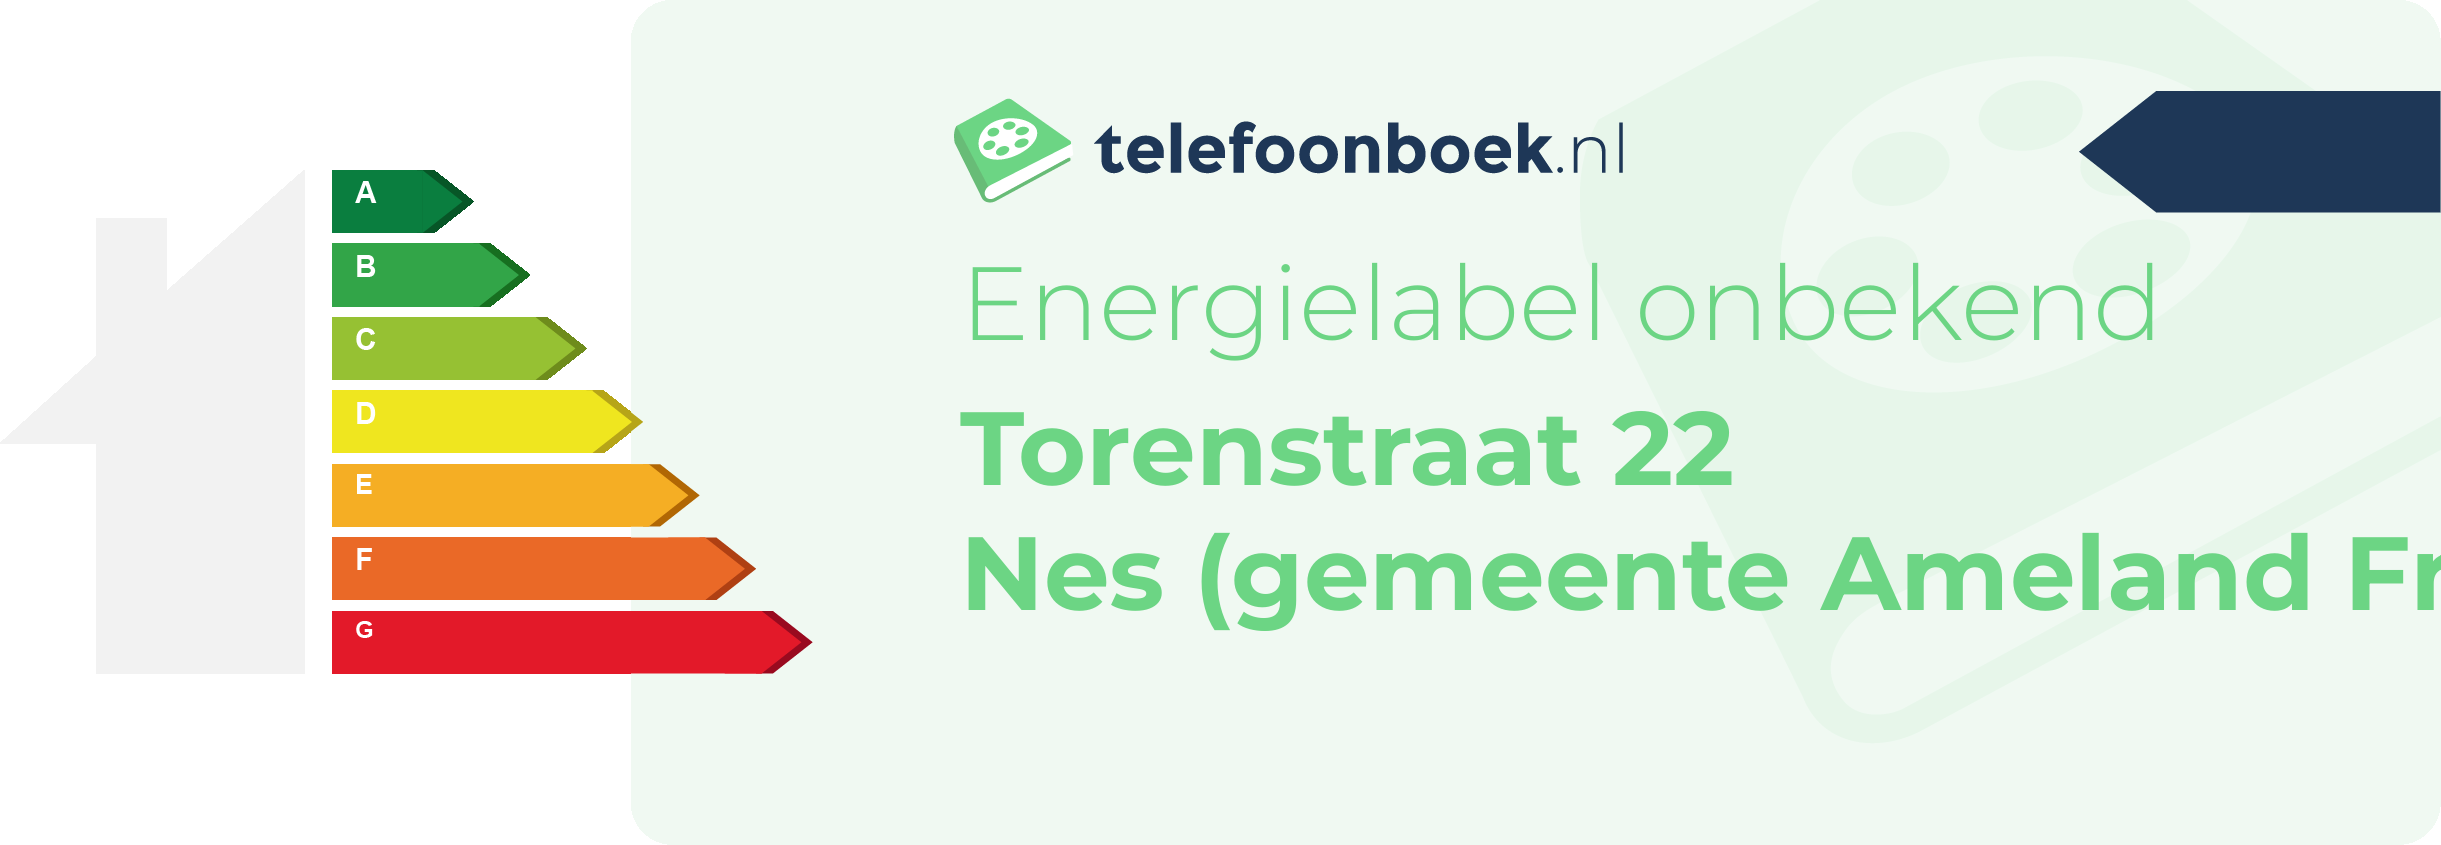 Energielabel Torenstraat 22 Nes (gemeente Ameland Friesland)